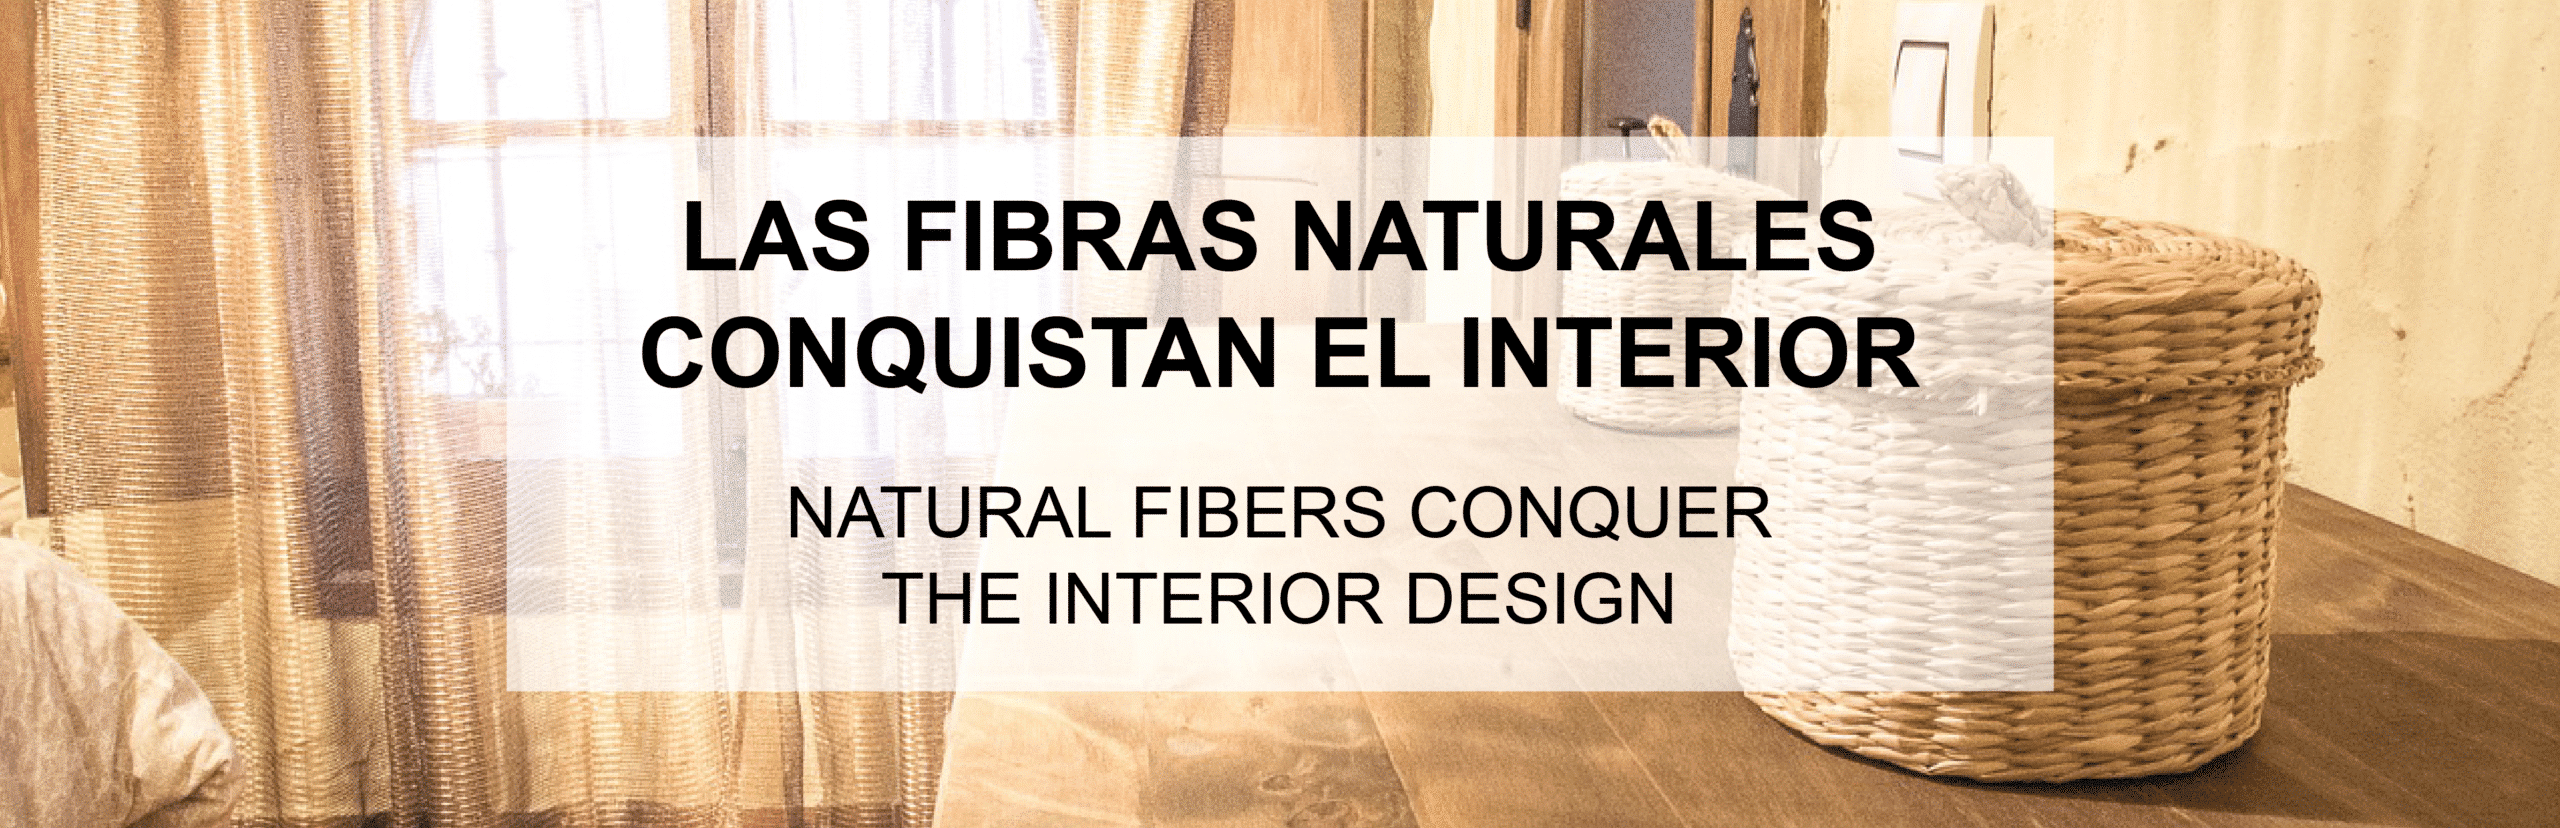 Las fibras naturales conquistan el interior